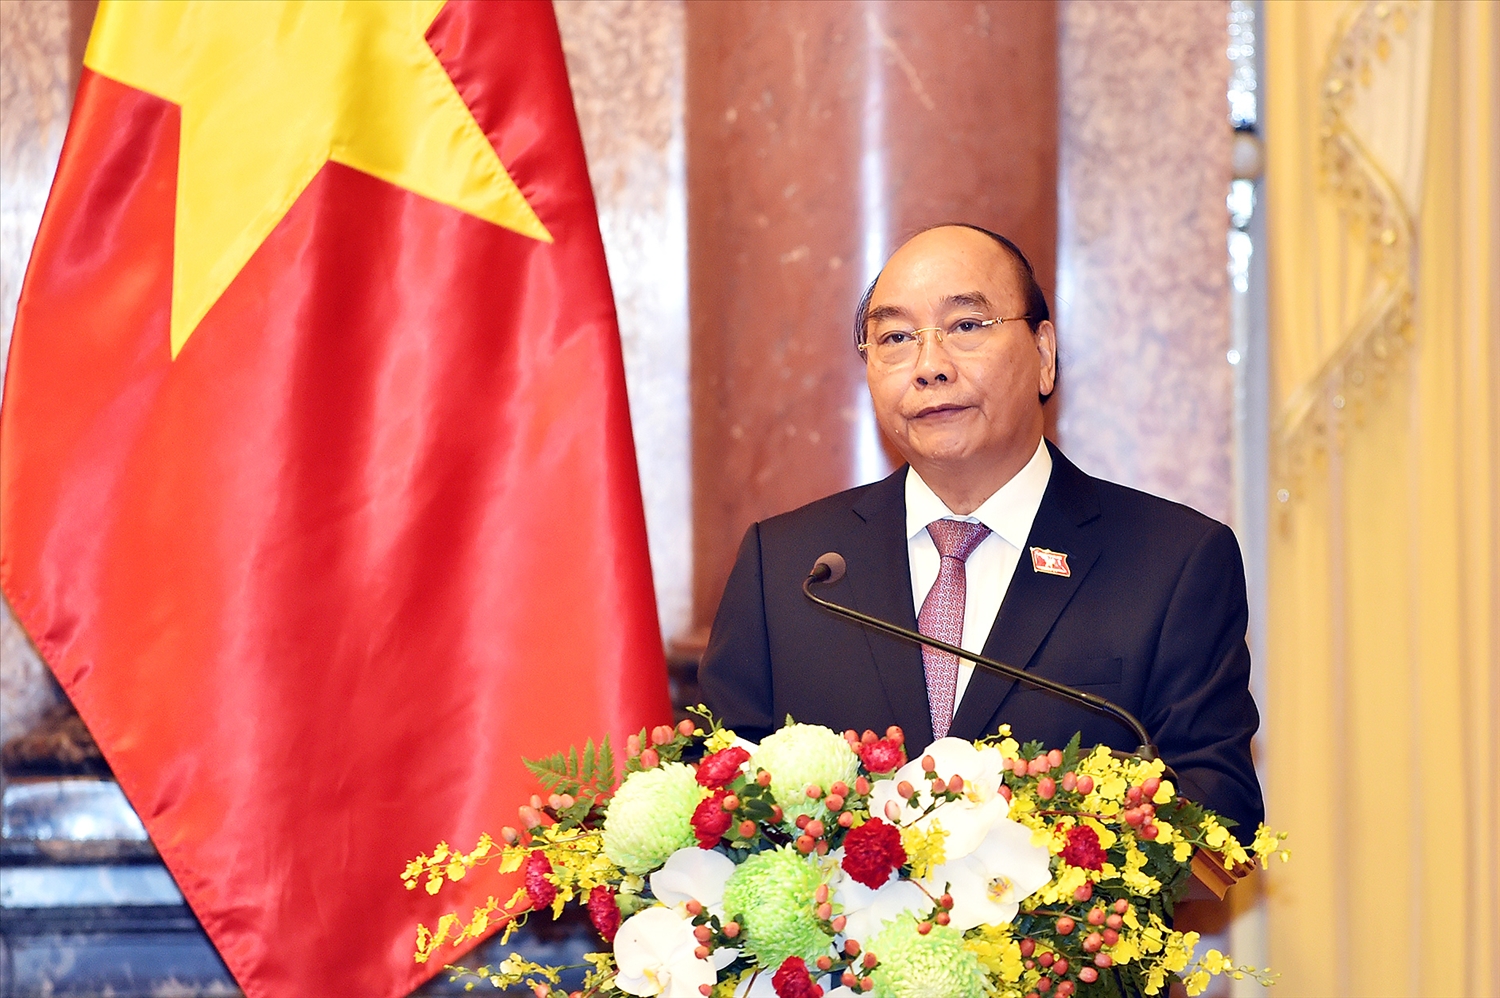 Chủ tịch nước Nguyễn Xuân Phúc: “Chỉ có tinh thần đoàn kết, quyết tâm mới thành công". Ảnh: VGP/Nhật Bắc